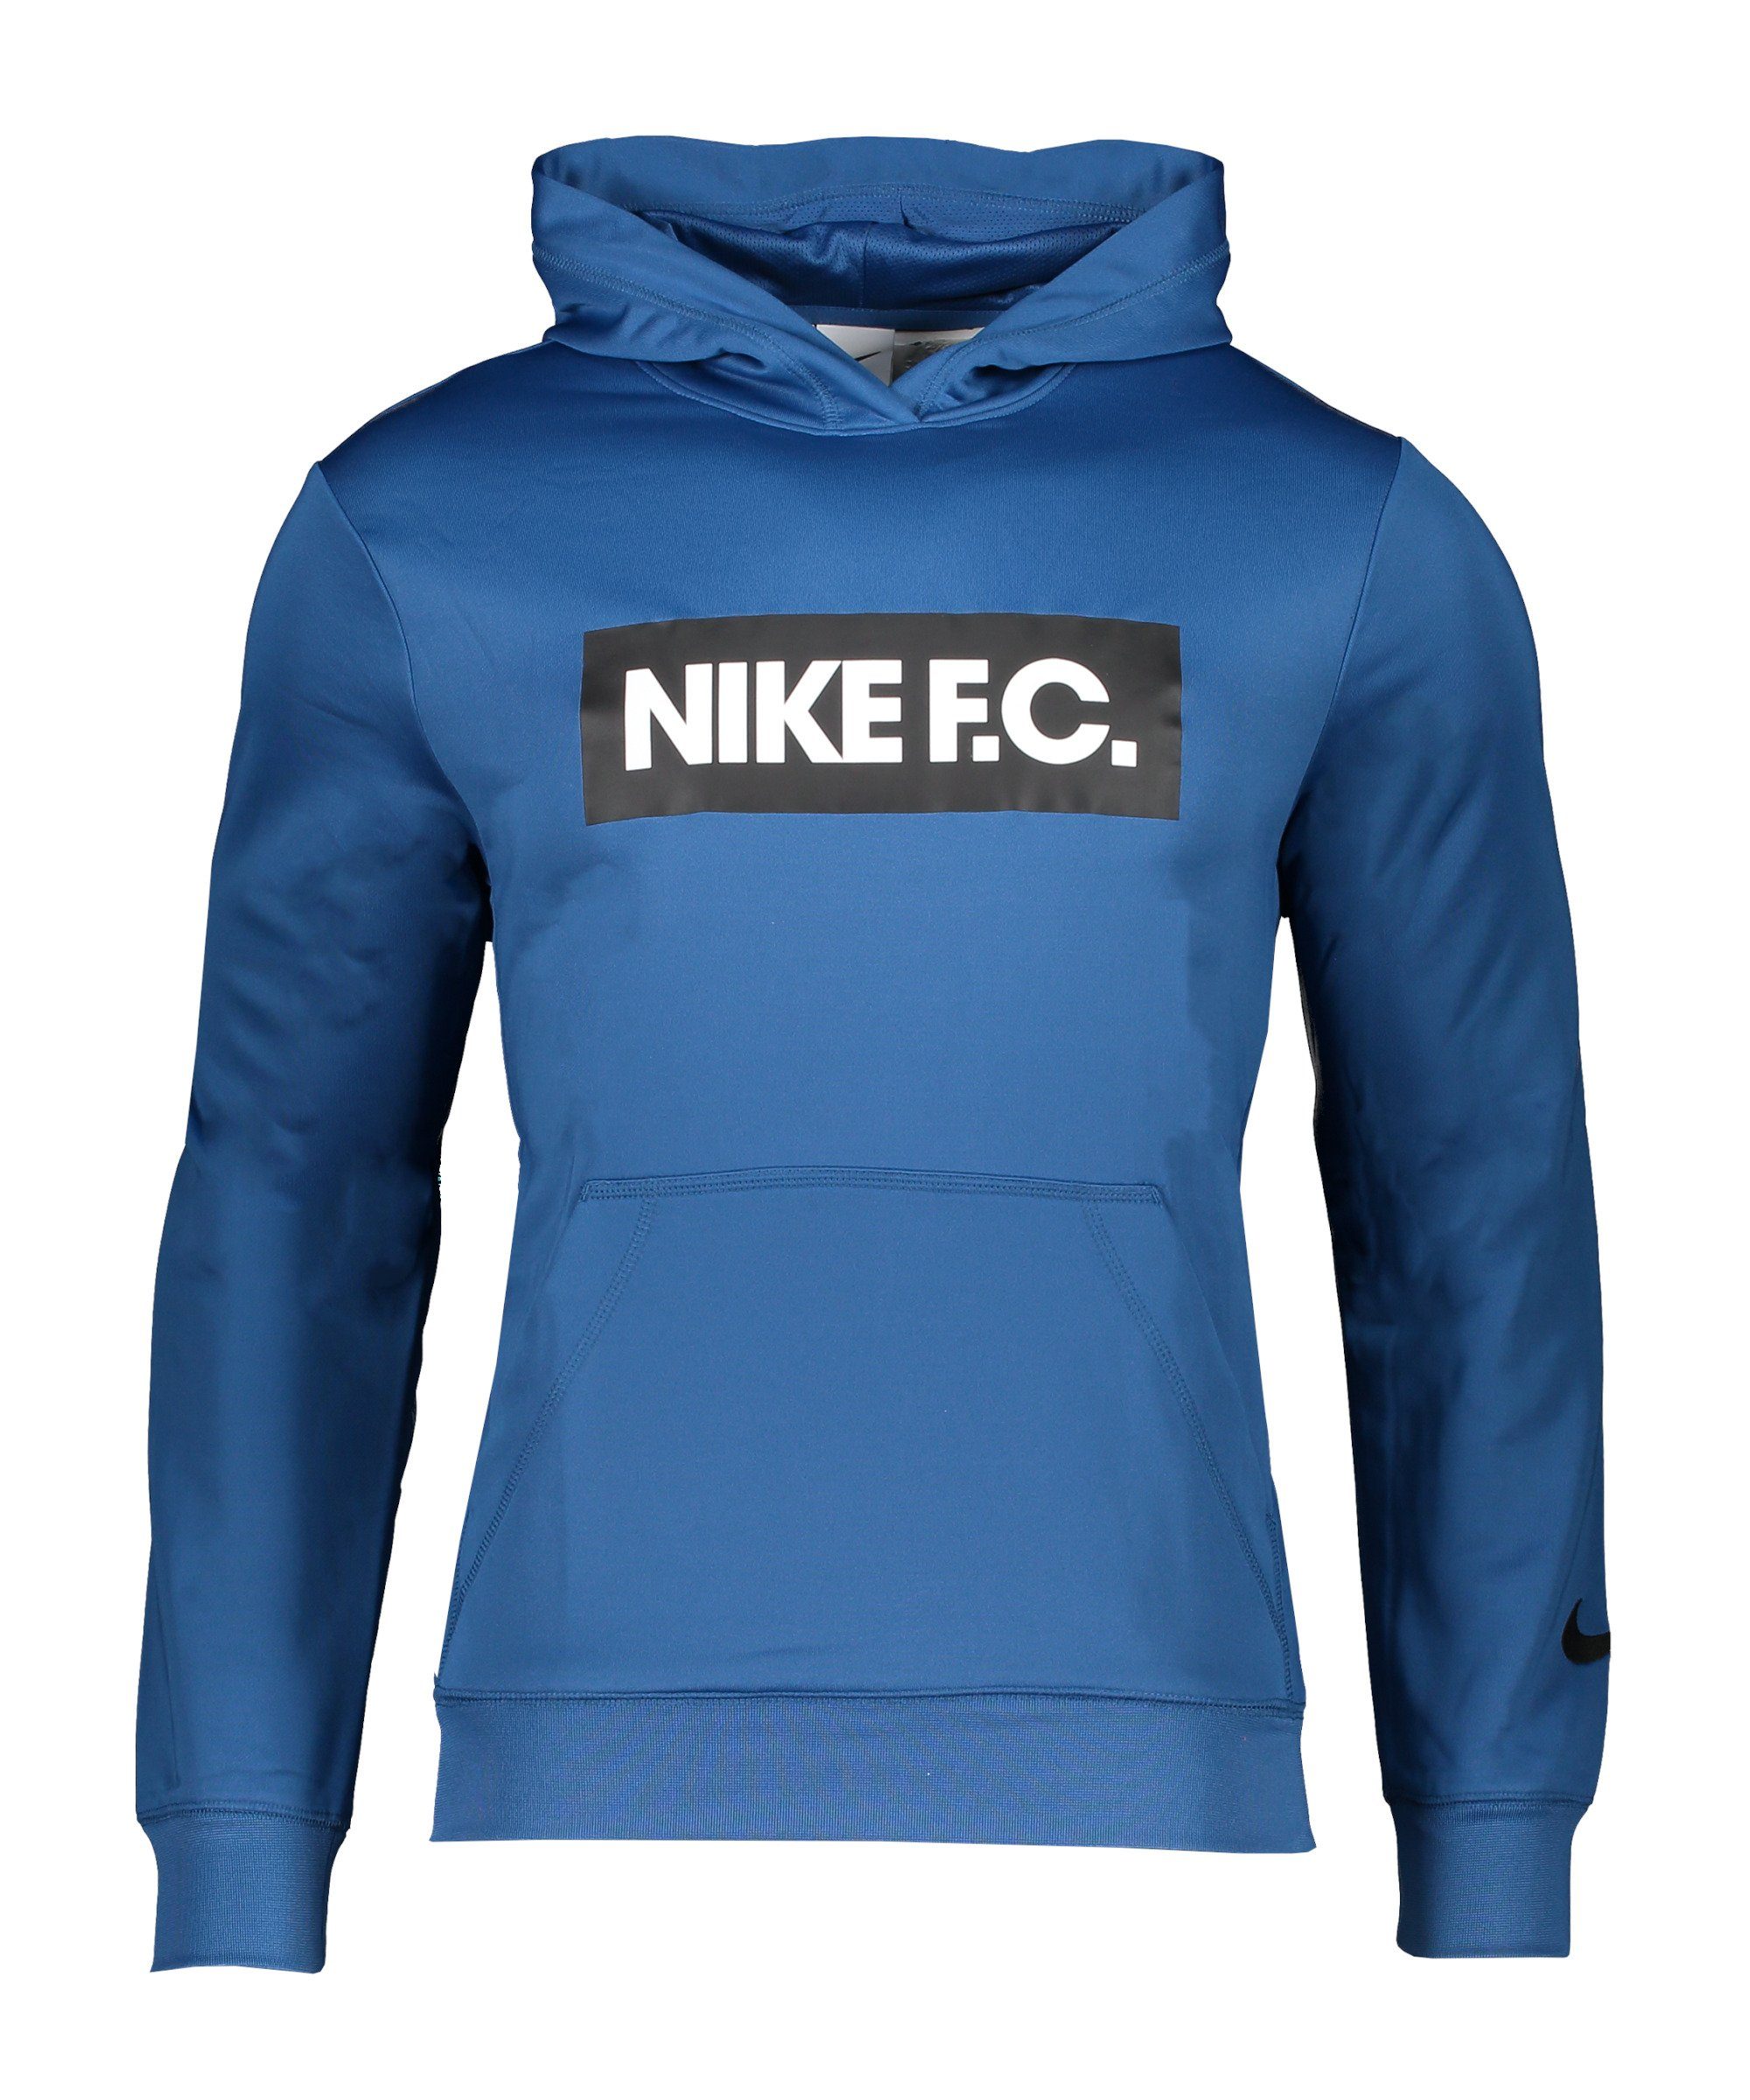 Sportswear blauweissschwarz Nike Fleece F.C. Hoody Sweatshirt